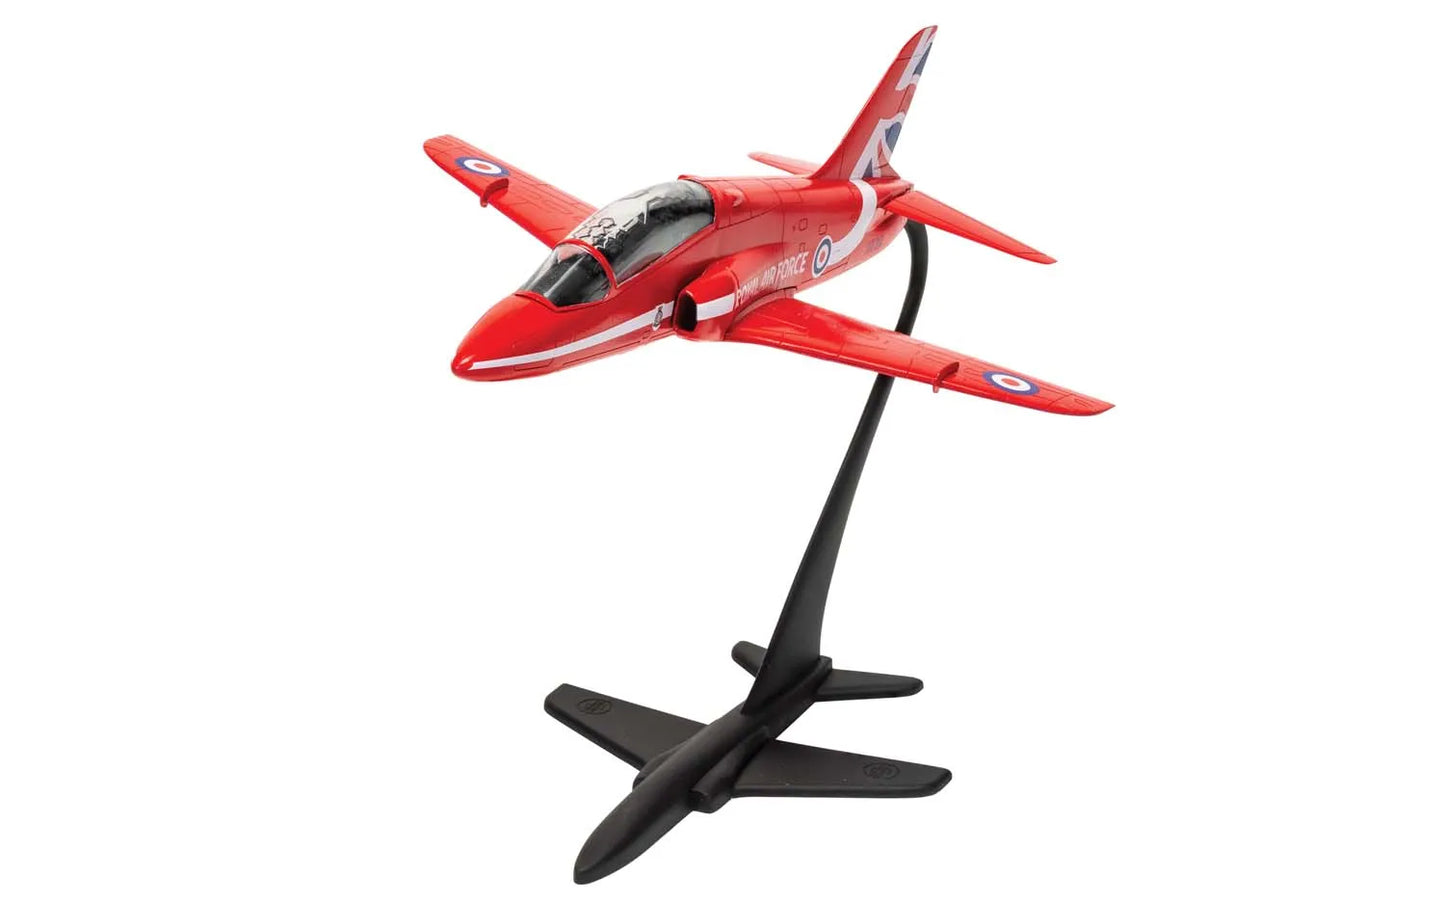 Red Arrows Hawk Gift Set